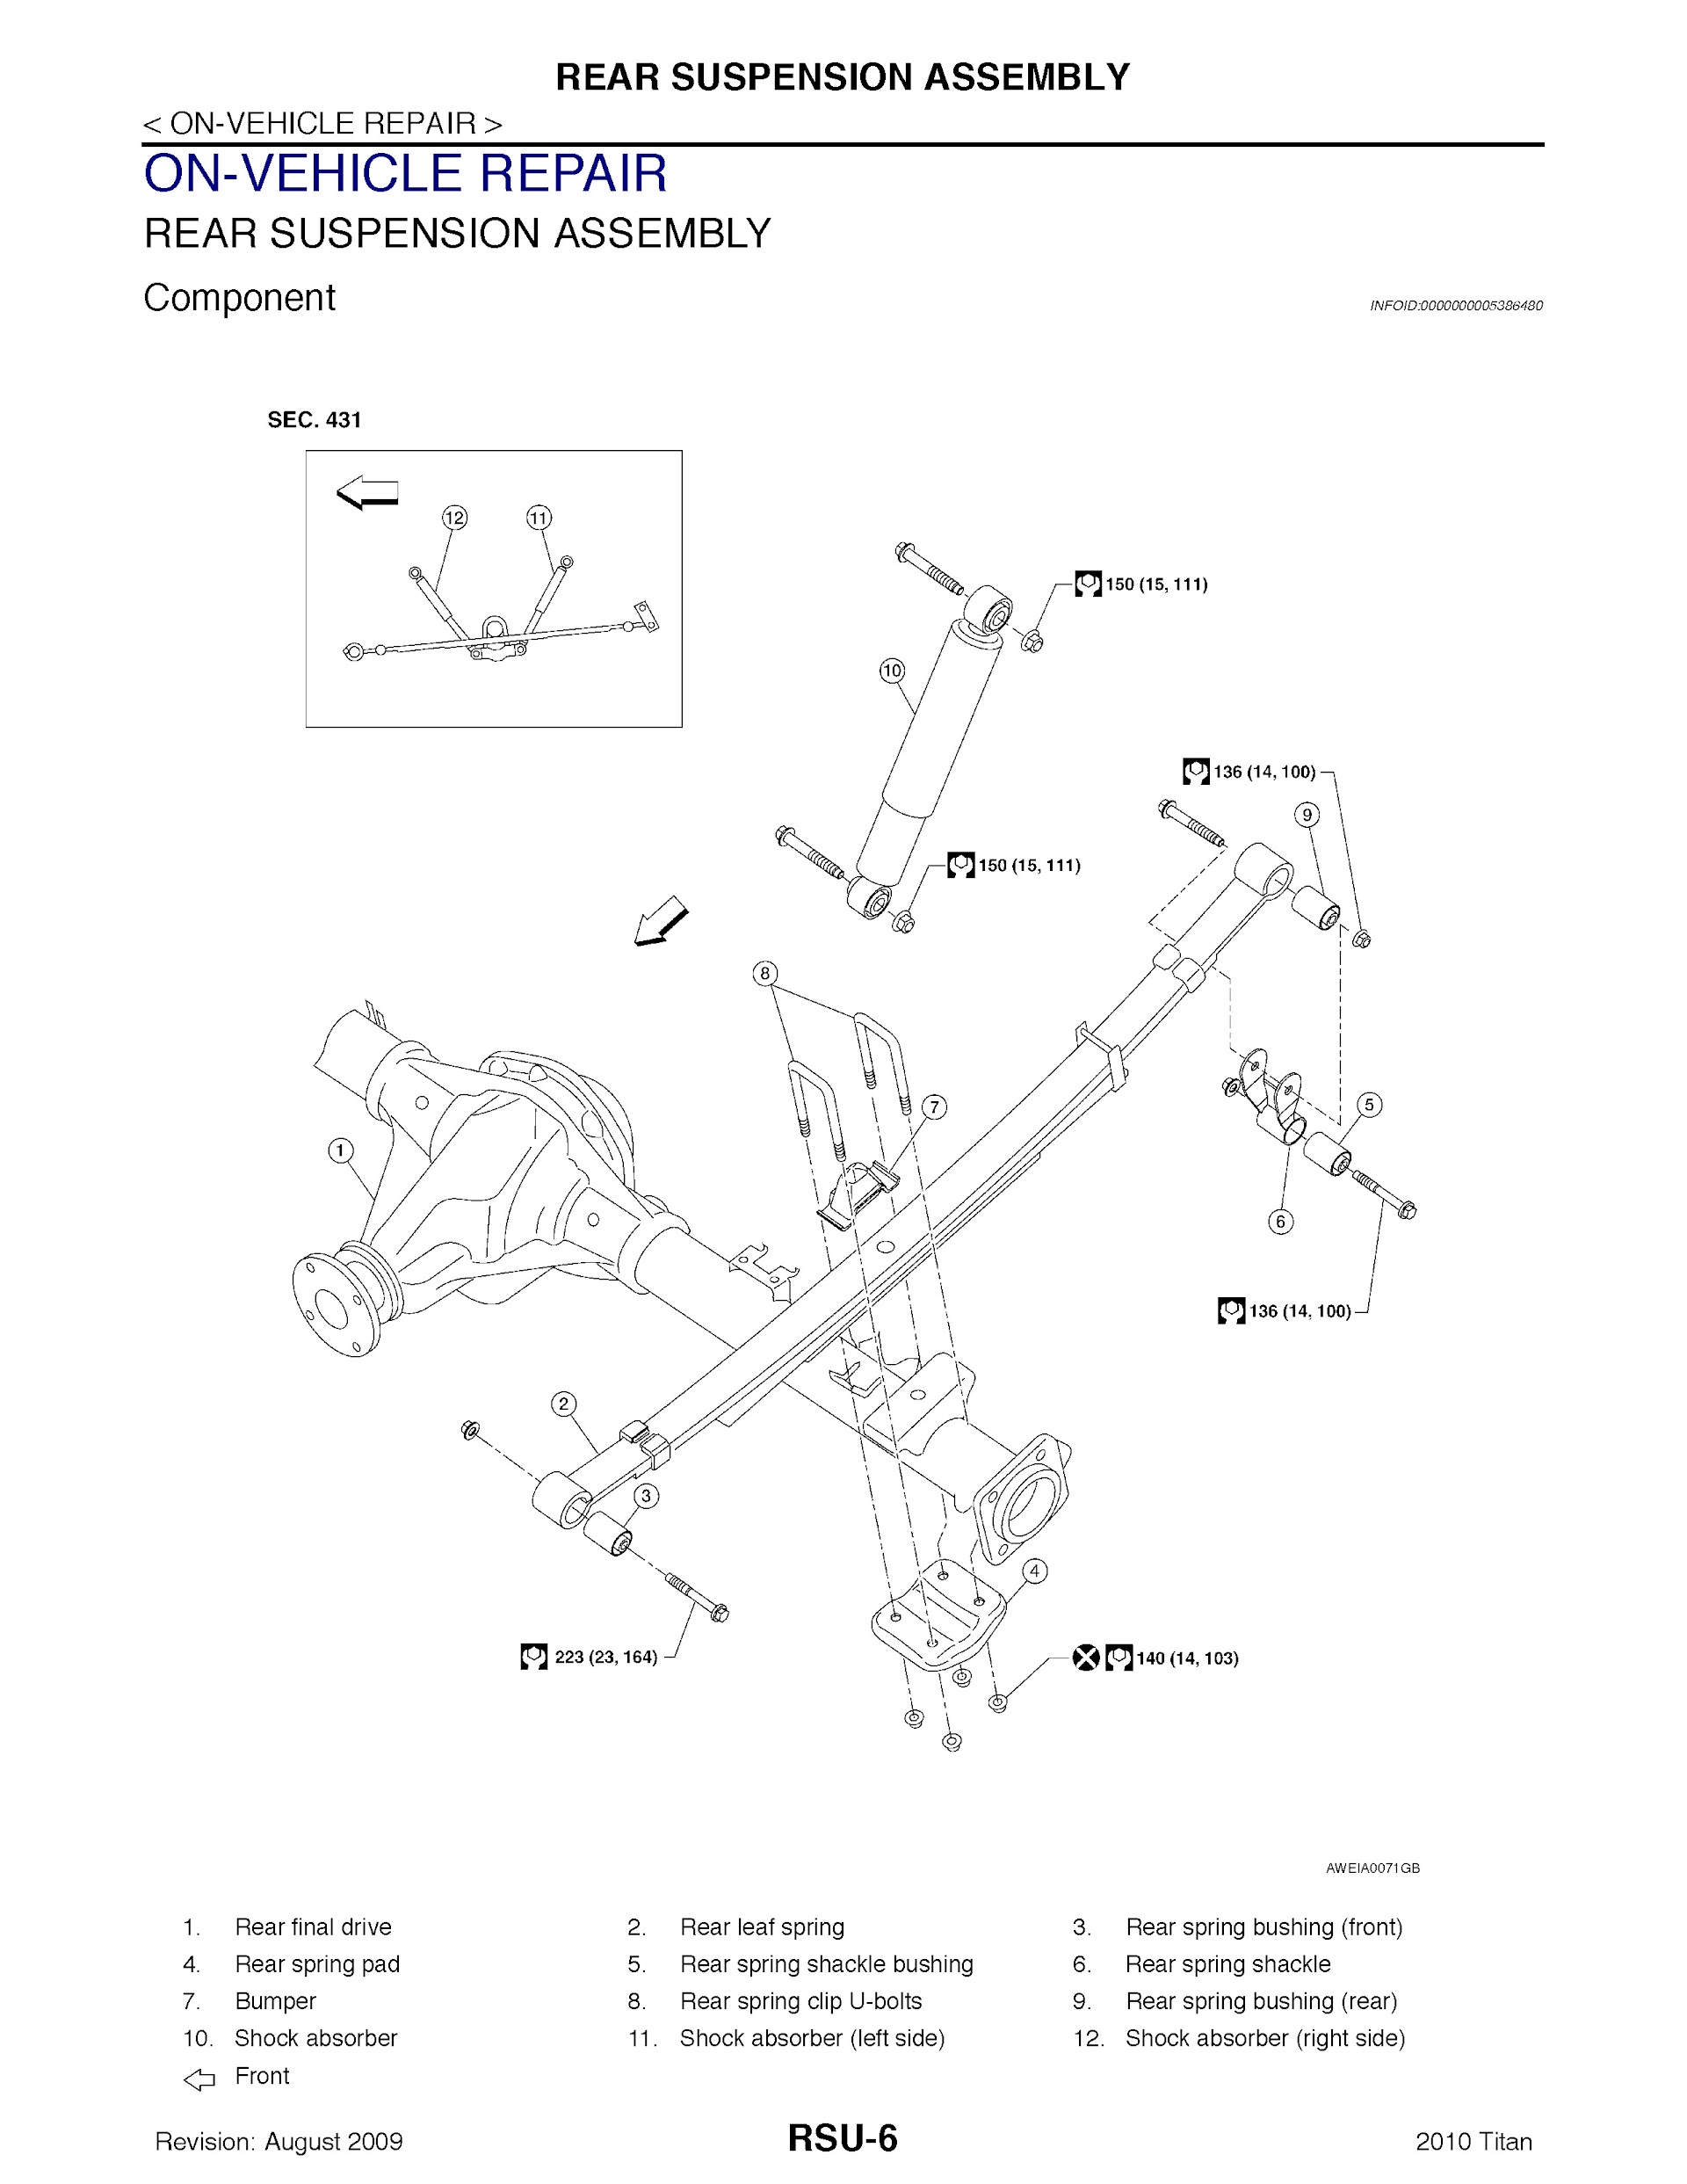 Download 2010 Nissan Titan Repair Manual.